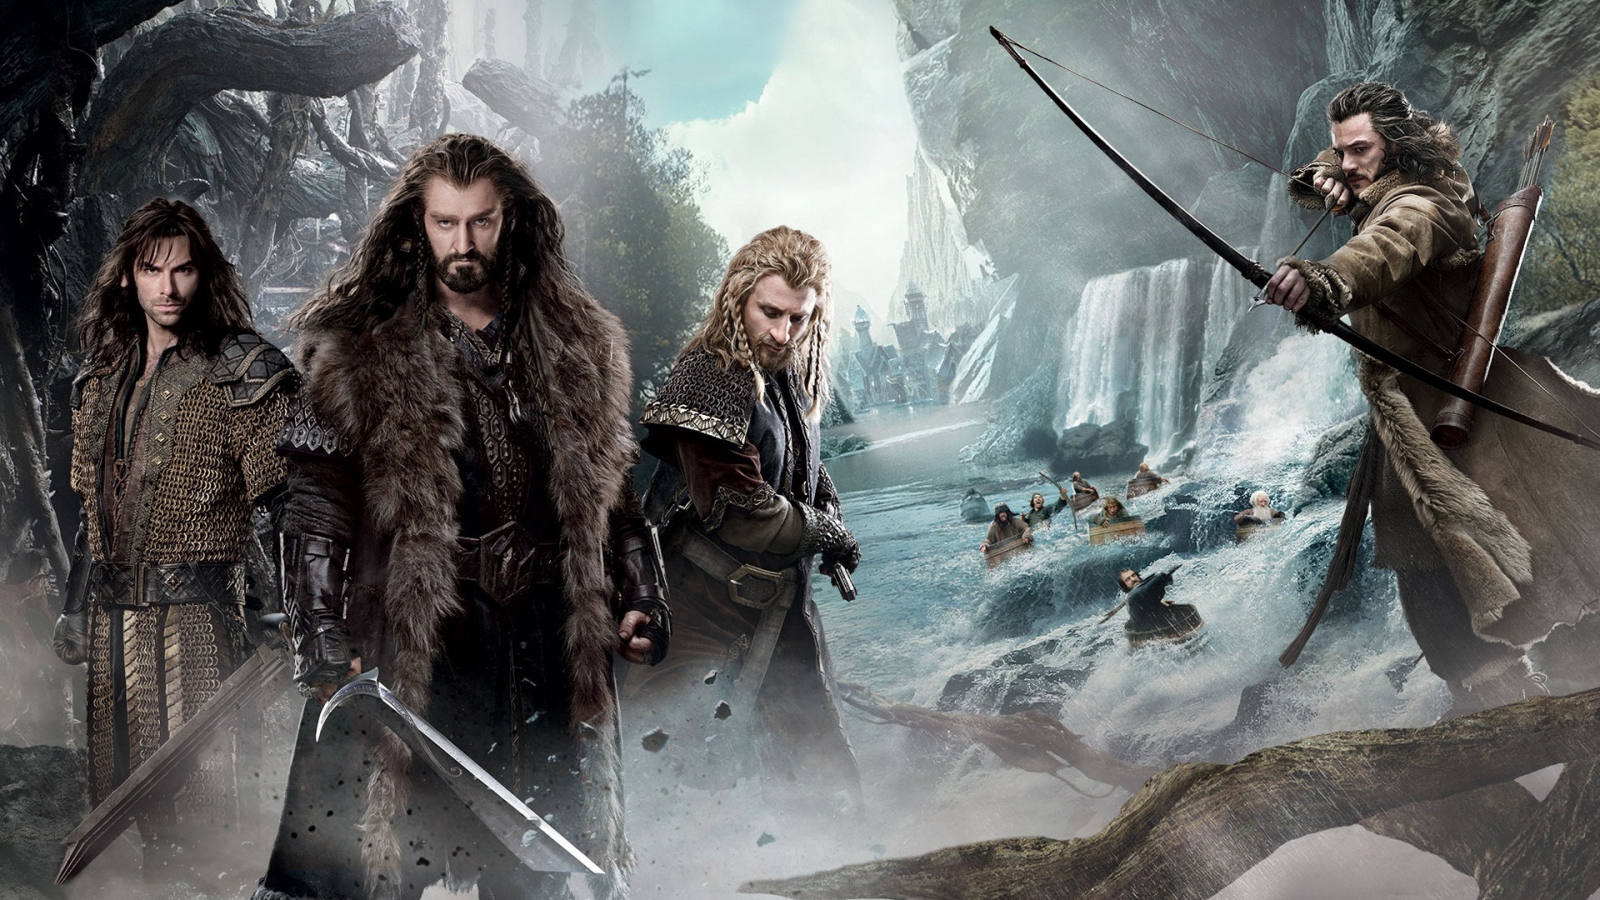 The Hobbit 2013 for 1600 x 900 HDTV resolution